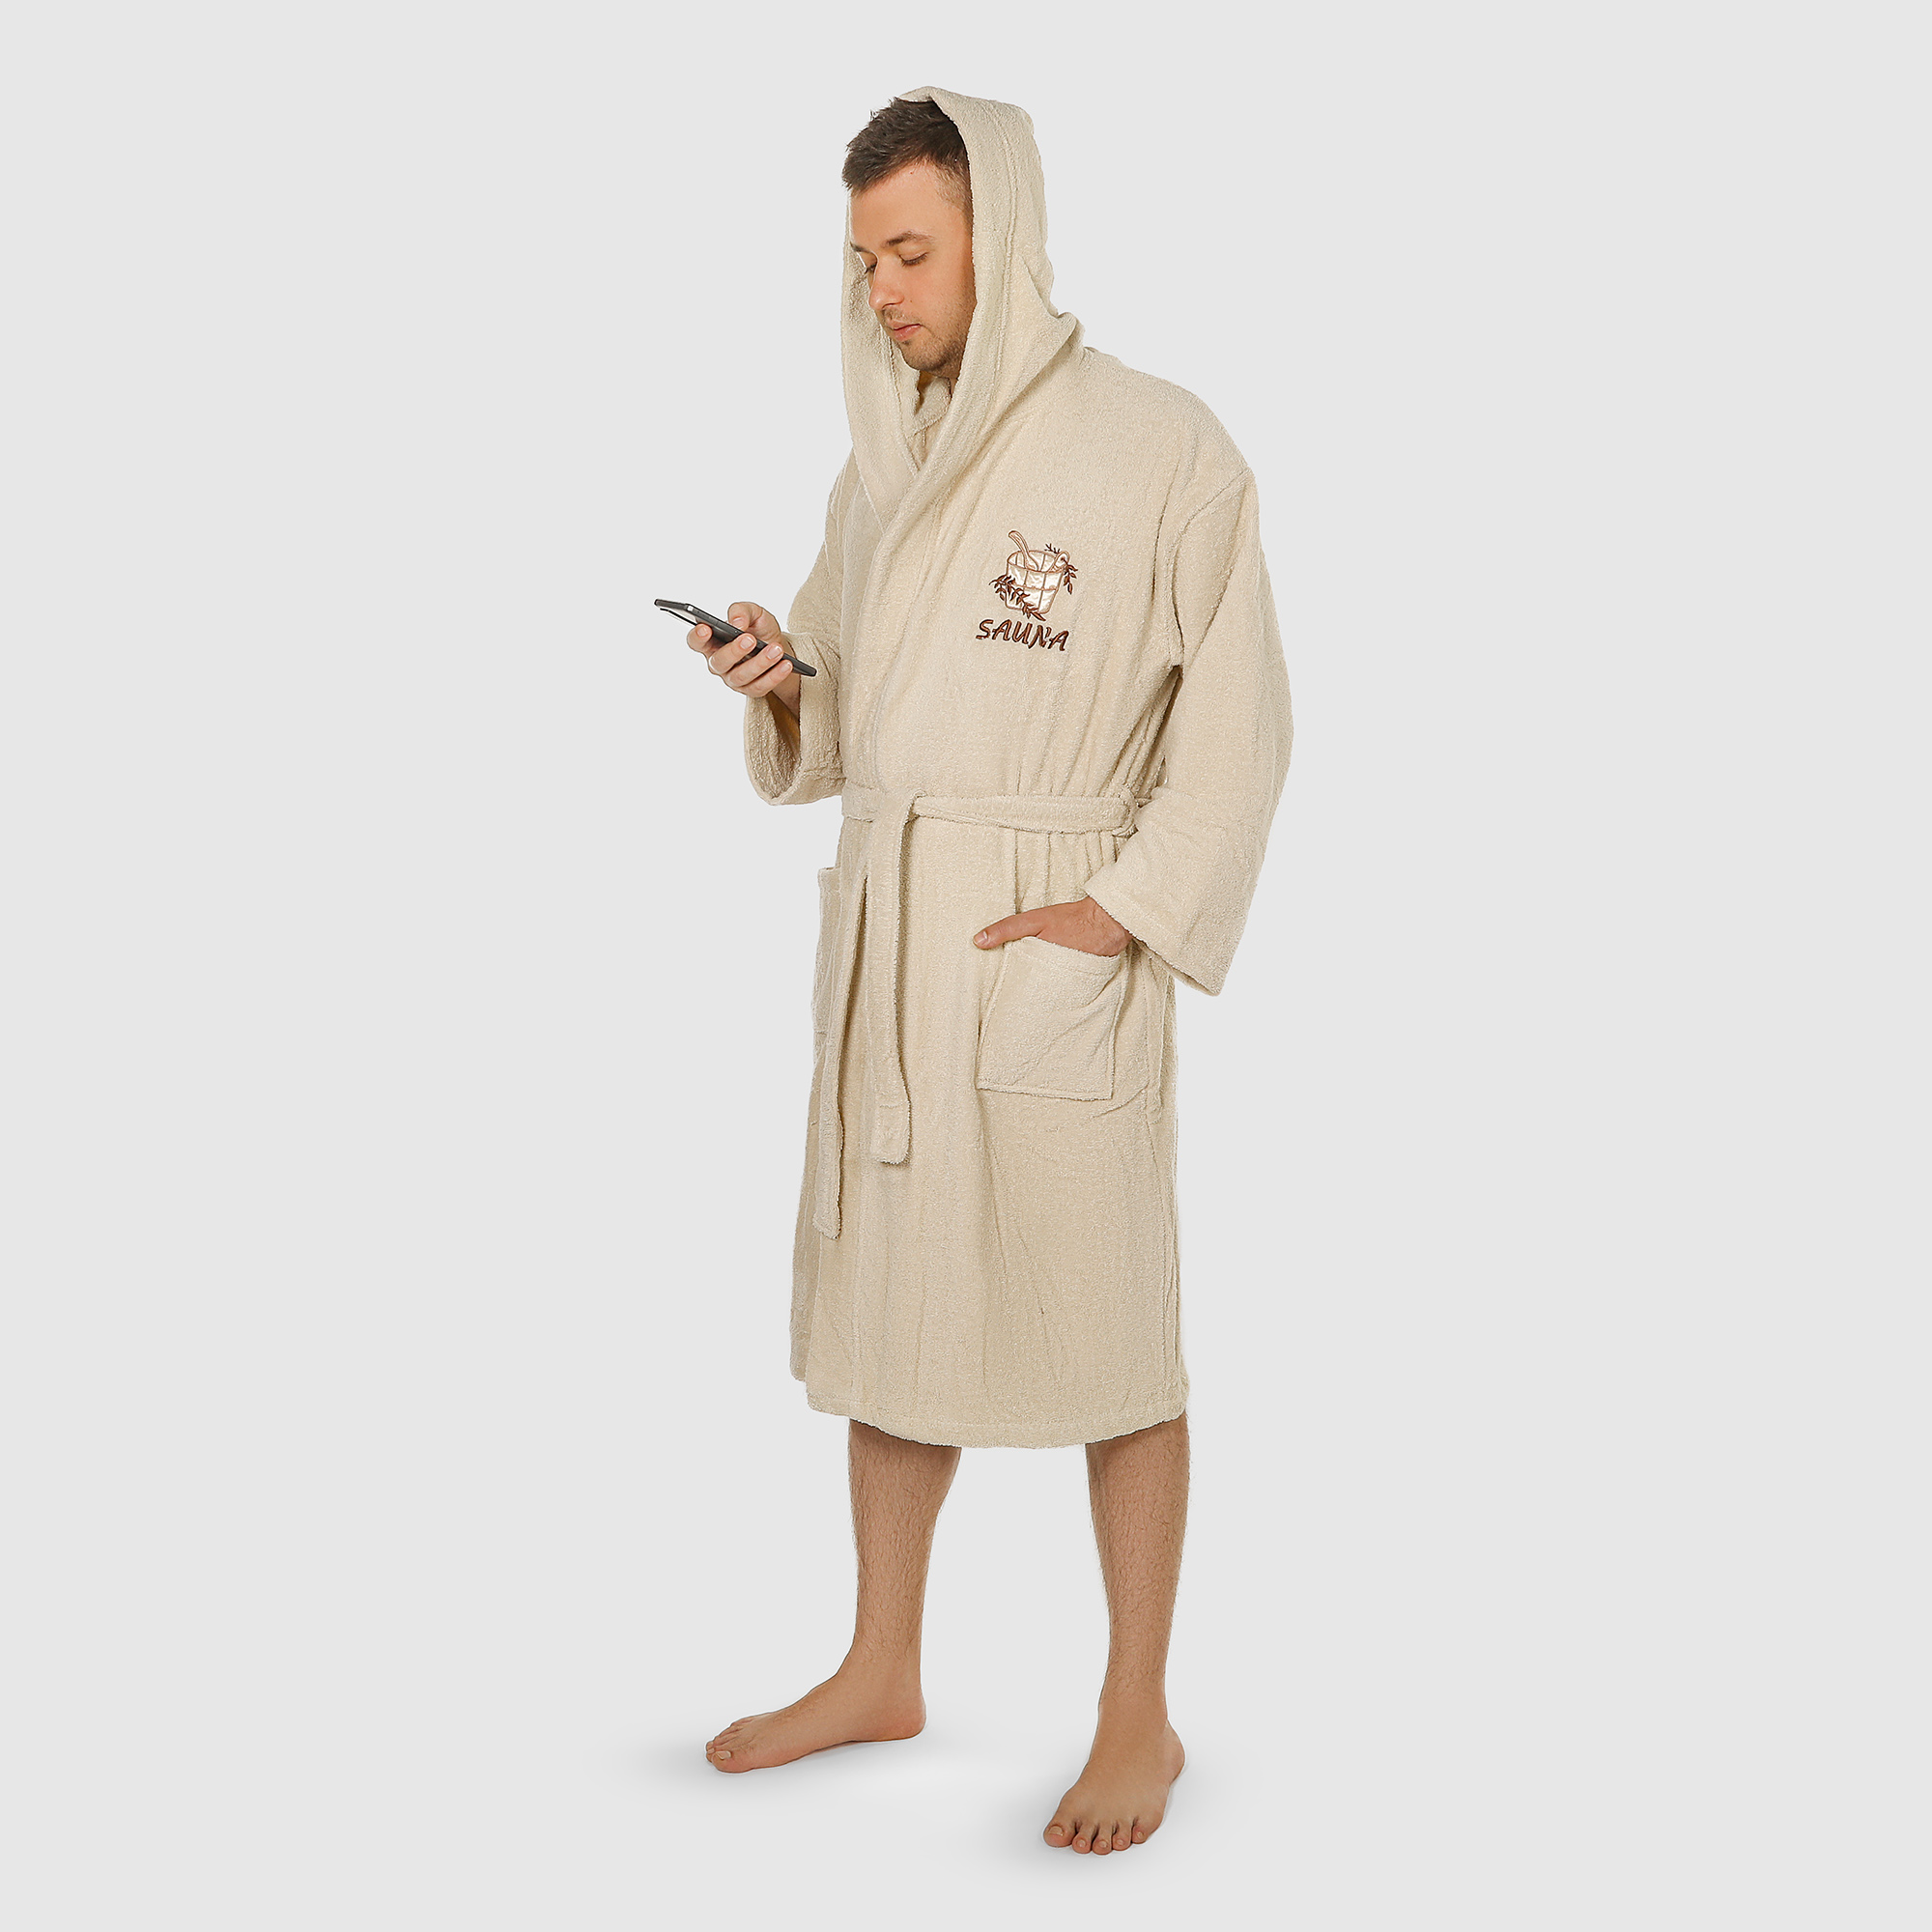 Халат мужской Asil Sauna brown XL махровый с капюшоном халат мужской asil sauna brown l махровый с капюшоном